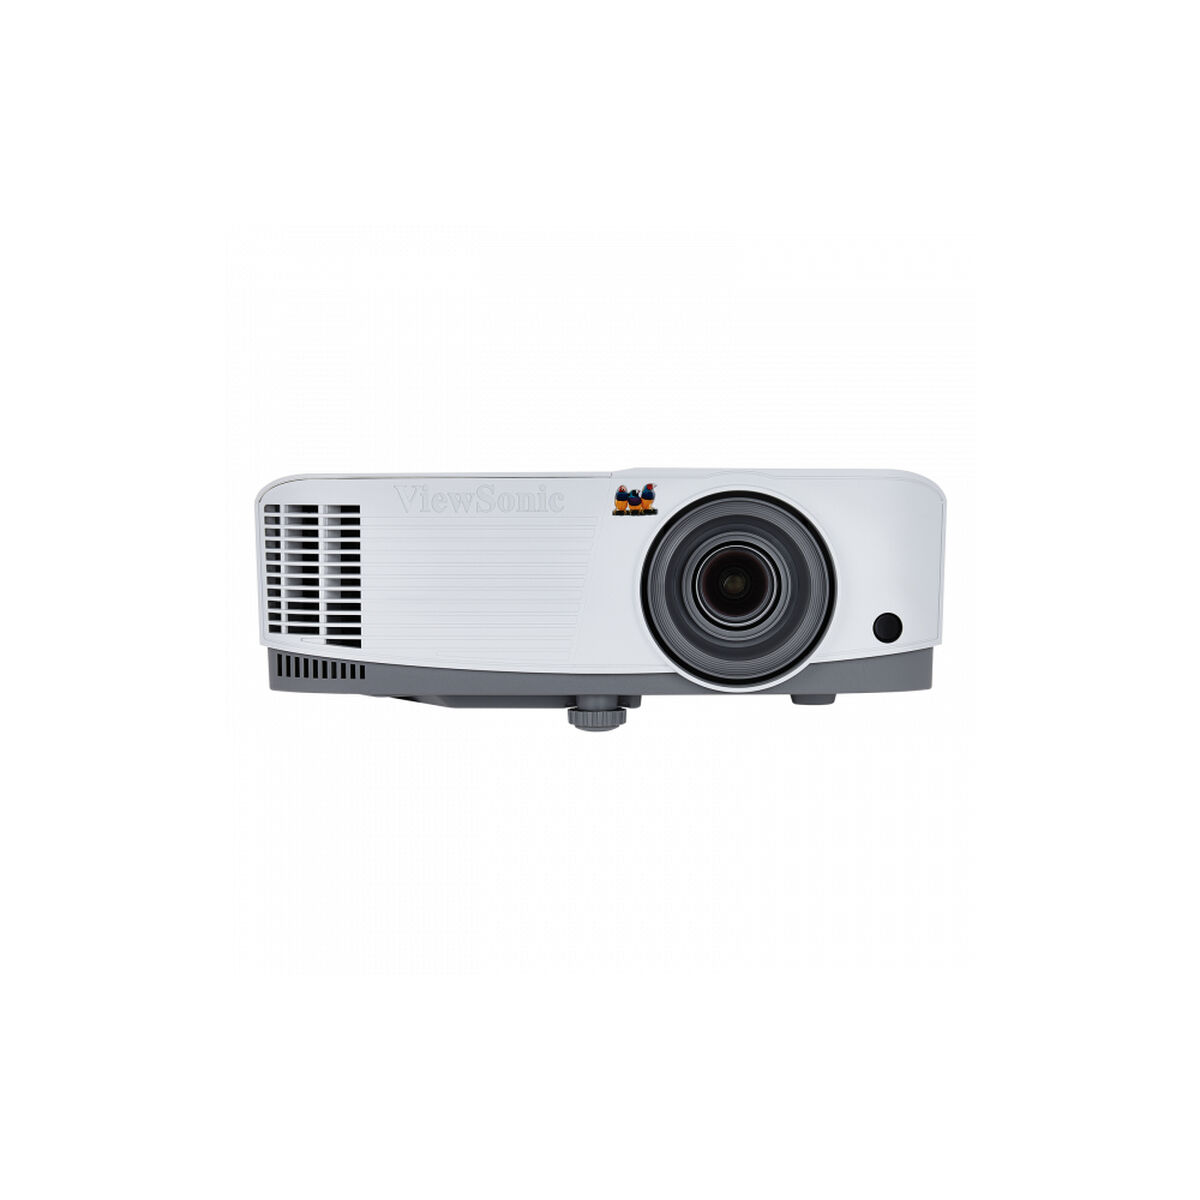 Proiettore ViewSonic PA503S SVGA 3800 lm